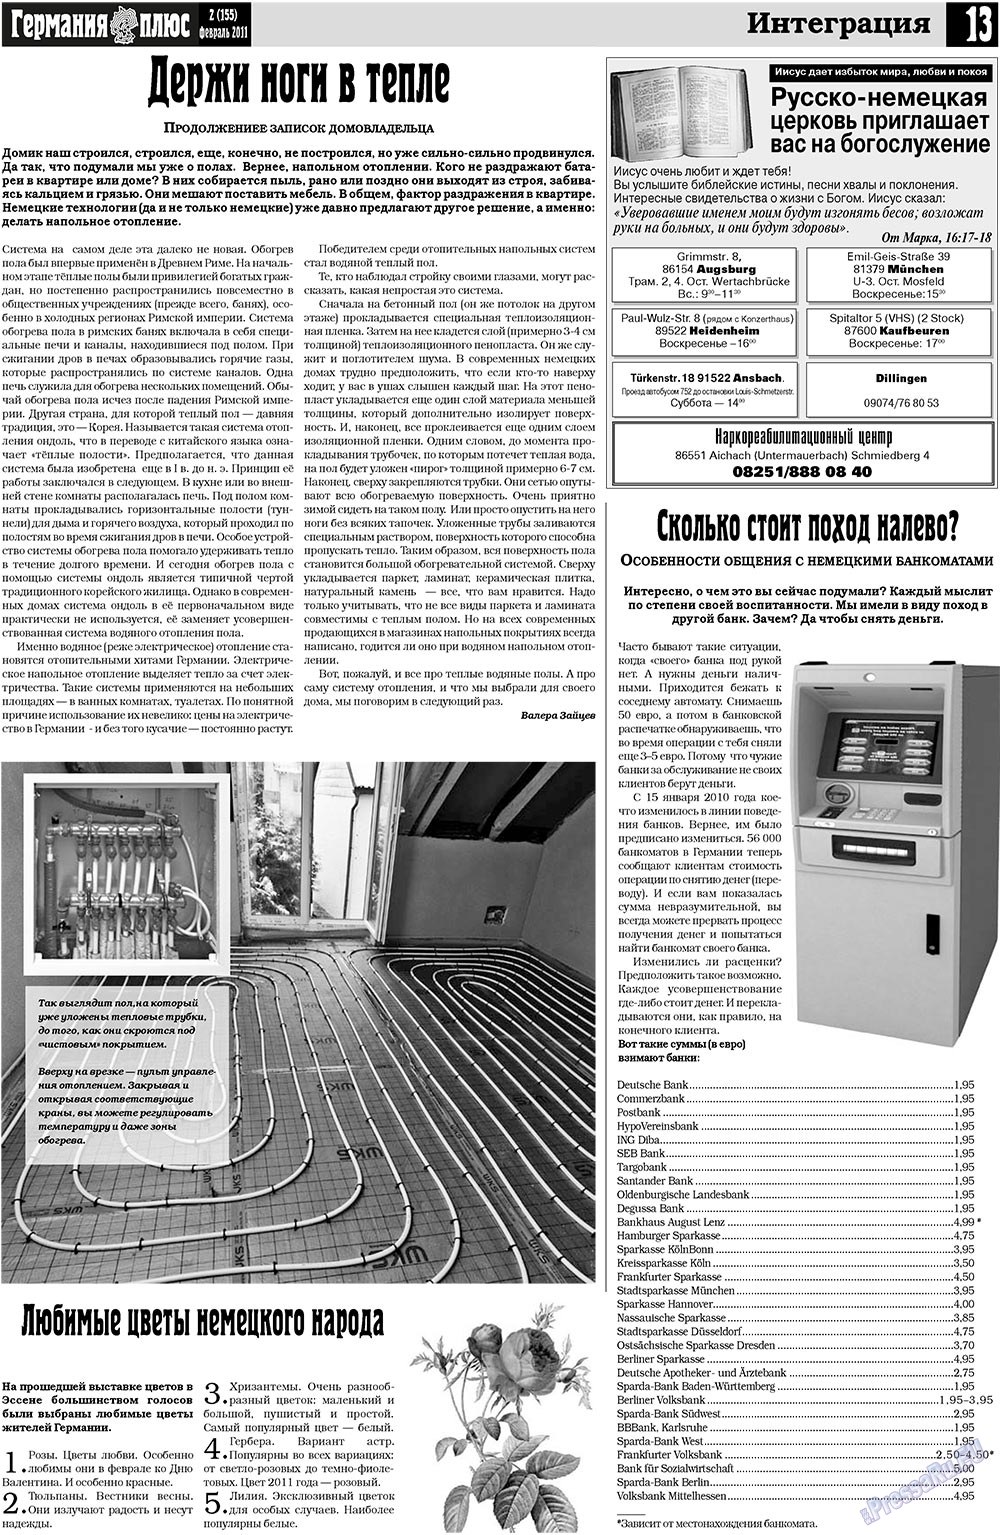 Германия плюс, газета. 2011 №2 стр.13